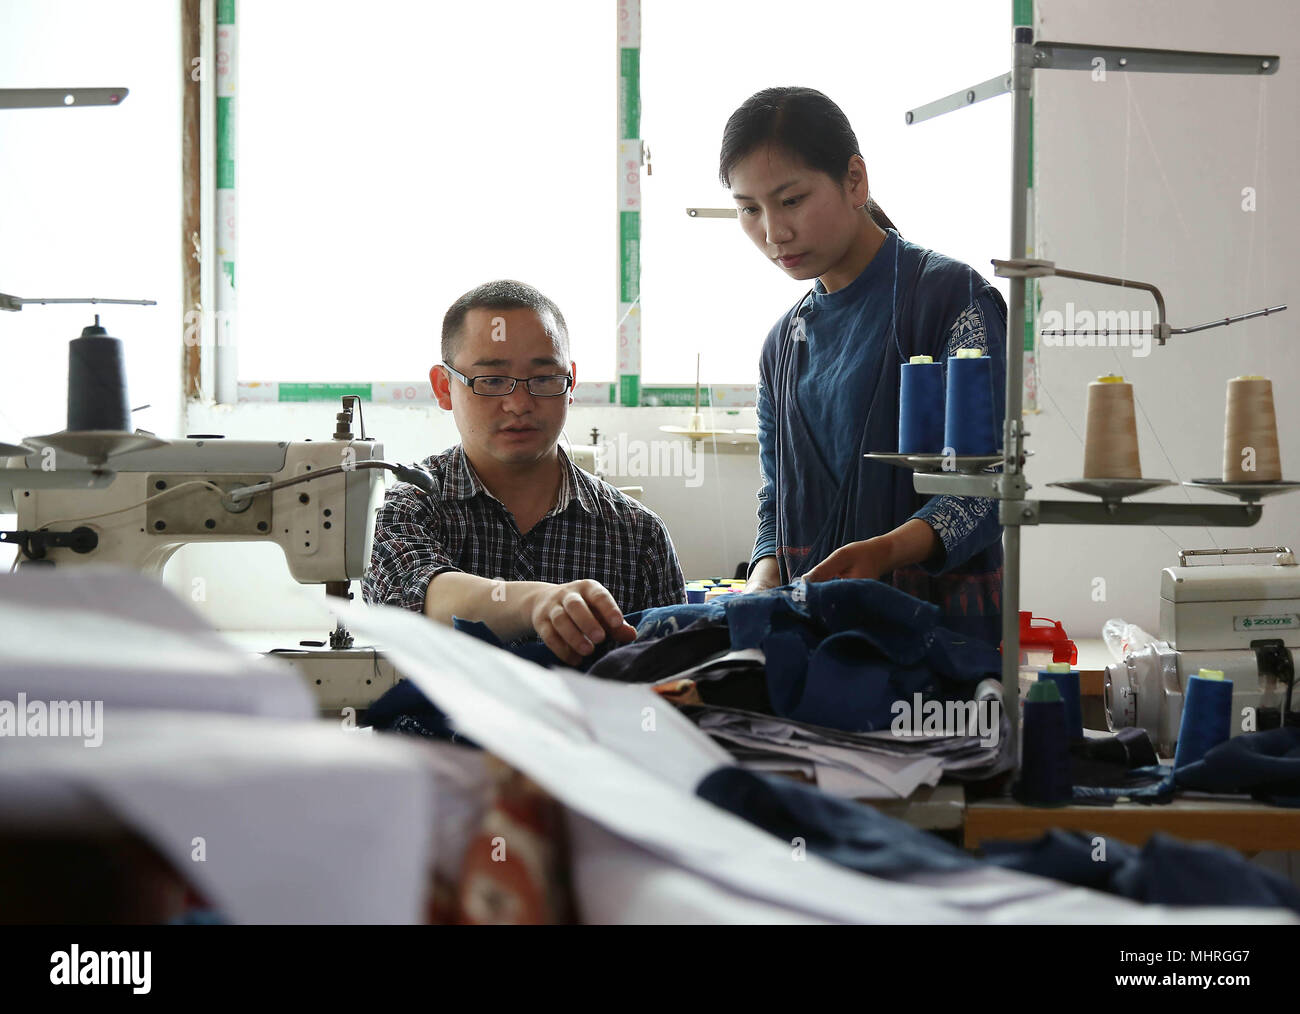 Danzhai, province du Guizhou en Chine. 2 mai, 2018. Zhang Yiping (R) traite de la production de vêtements batik avec son collègue de Danzhai County, au sud-ouest de la province du Guizhou, en Chine, le 2 mai 2018. Obsédé par la culture batik depuis un enfant, Zhang Yiping, une jeune femme née en 1993, a créé sa propre entreprise de créations de batik à sa ville natale de Danzhai en 2014. Grâce à plusieurs années de développement, Zhang a mis en place sa boutique batik et également une base de production fait-main où plus de 100 femmes ont été employées. Credit : Huang Xiaohai/Xinhua/Alamy Live News Banque D'Images